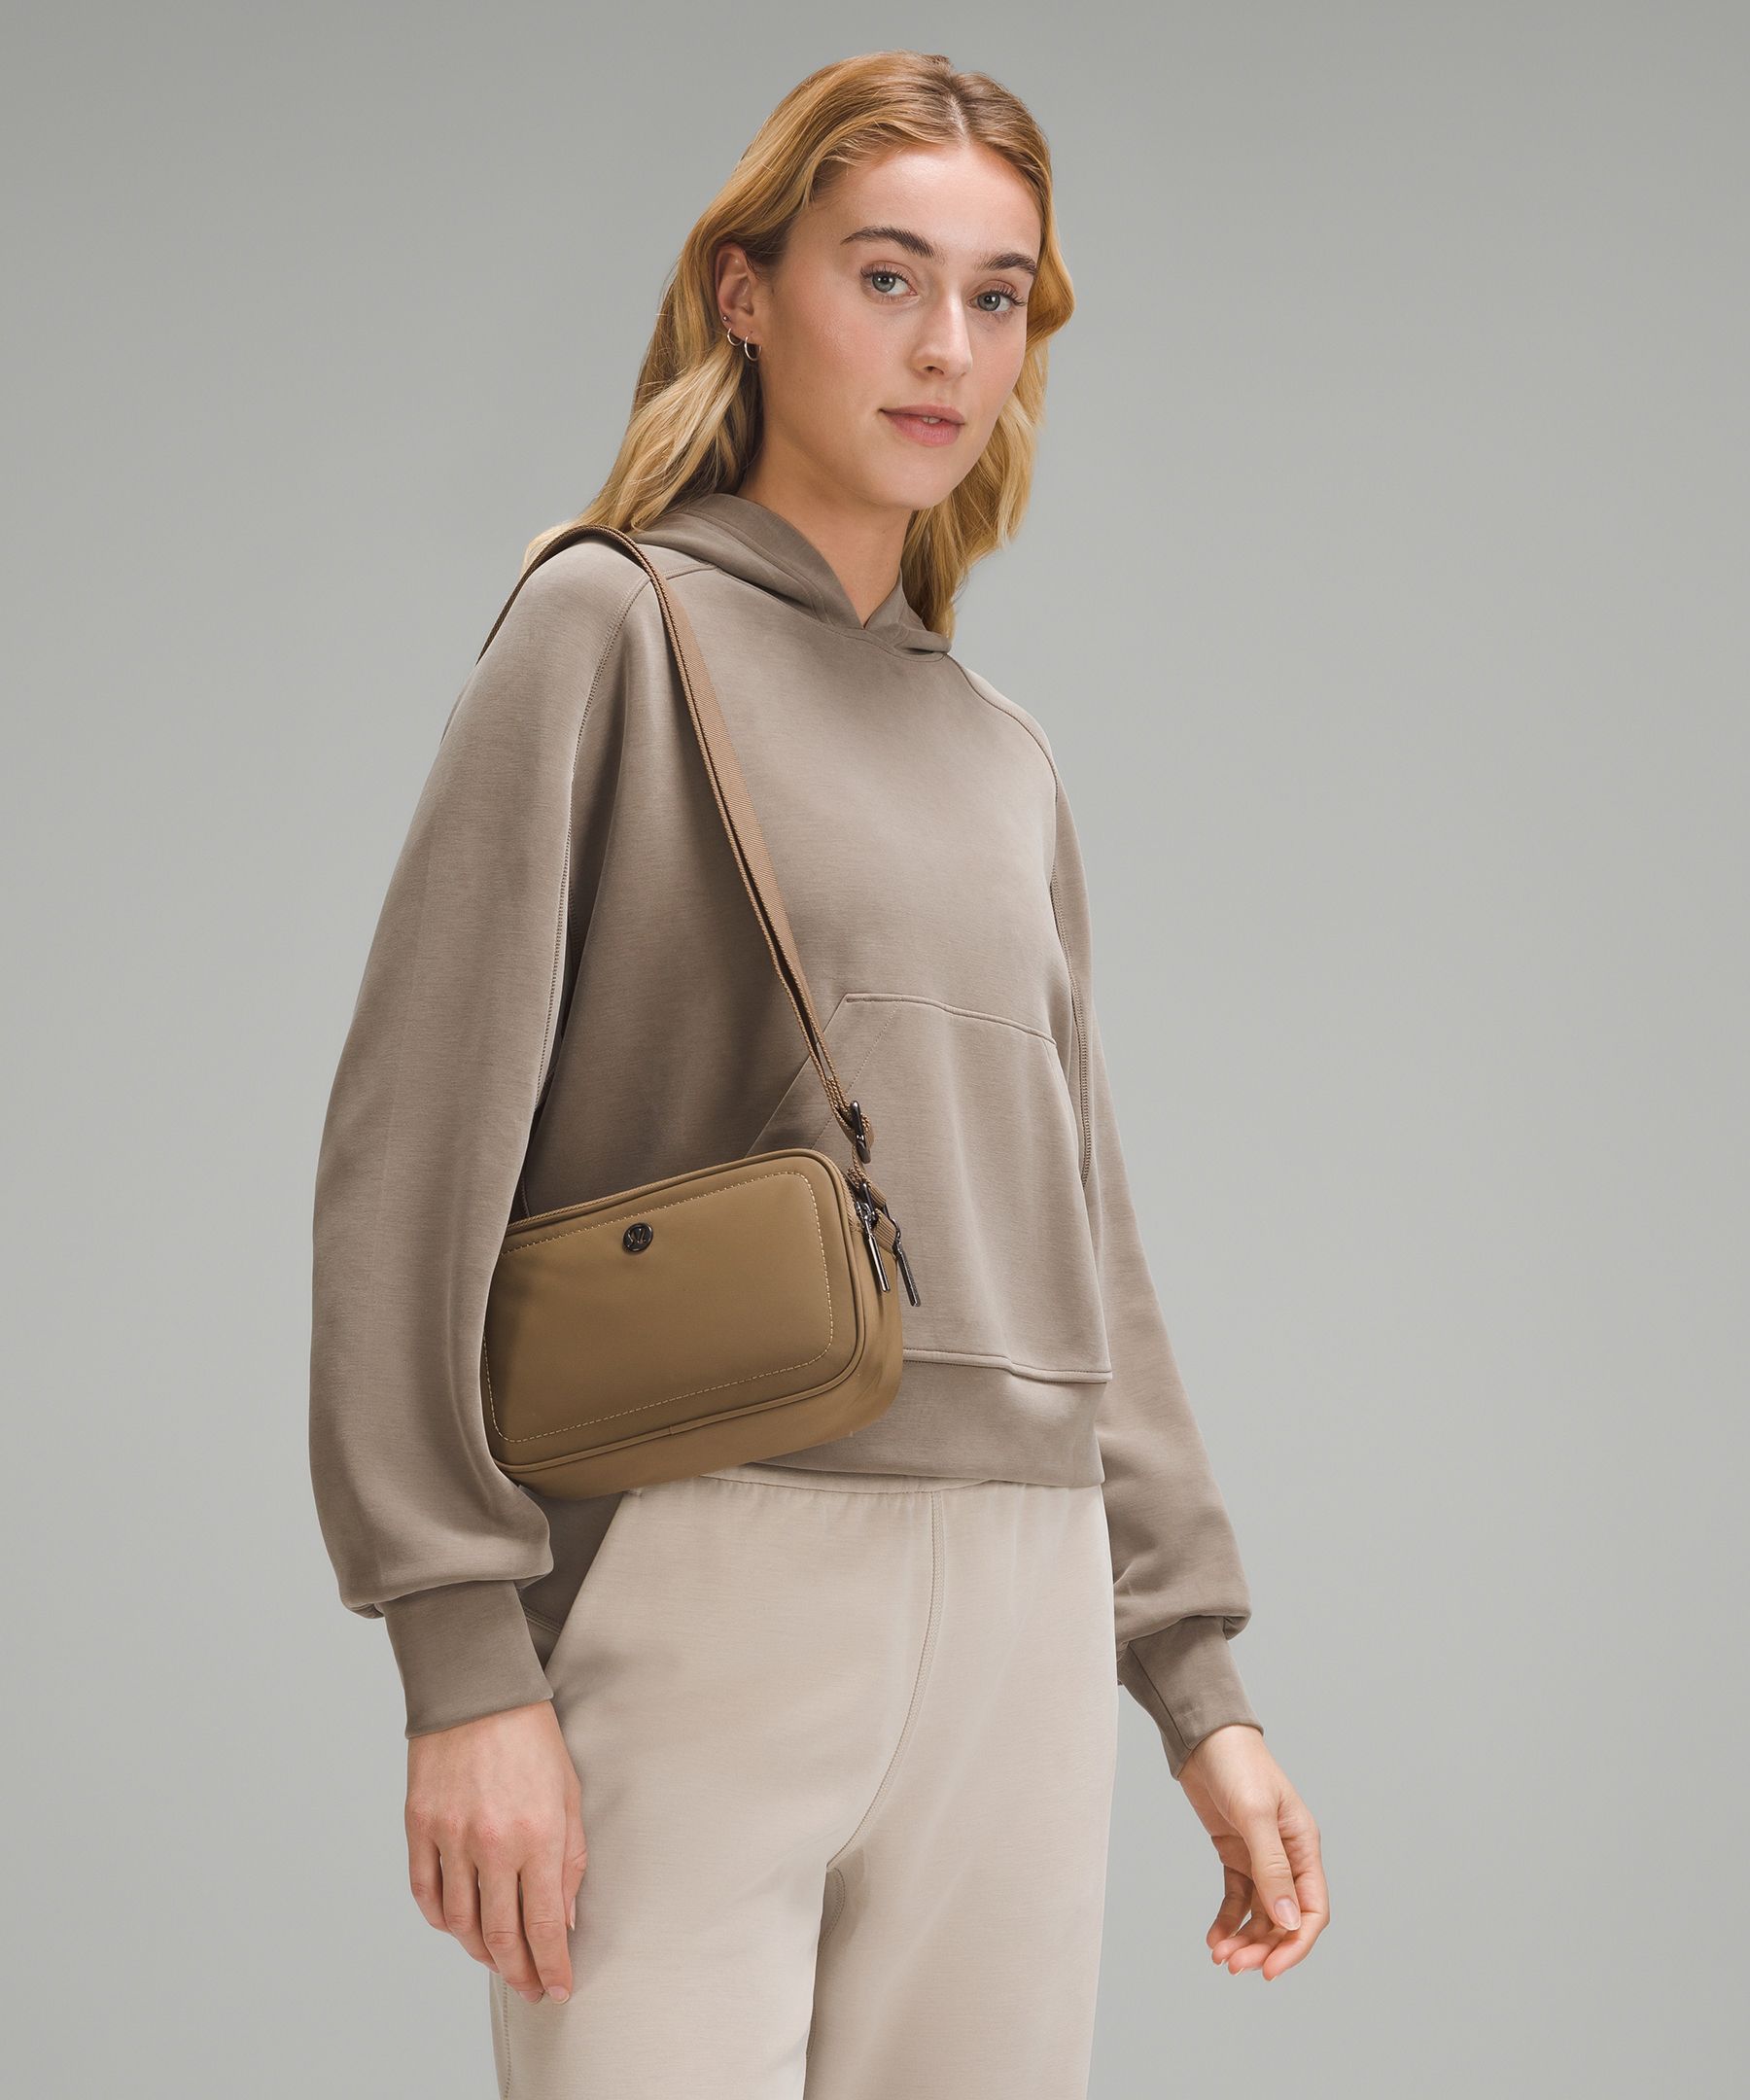 Crossbody Camera Bag 2L | Women's Bags,Purses,Wallets